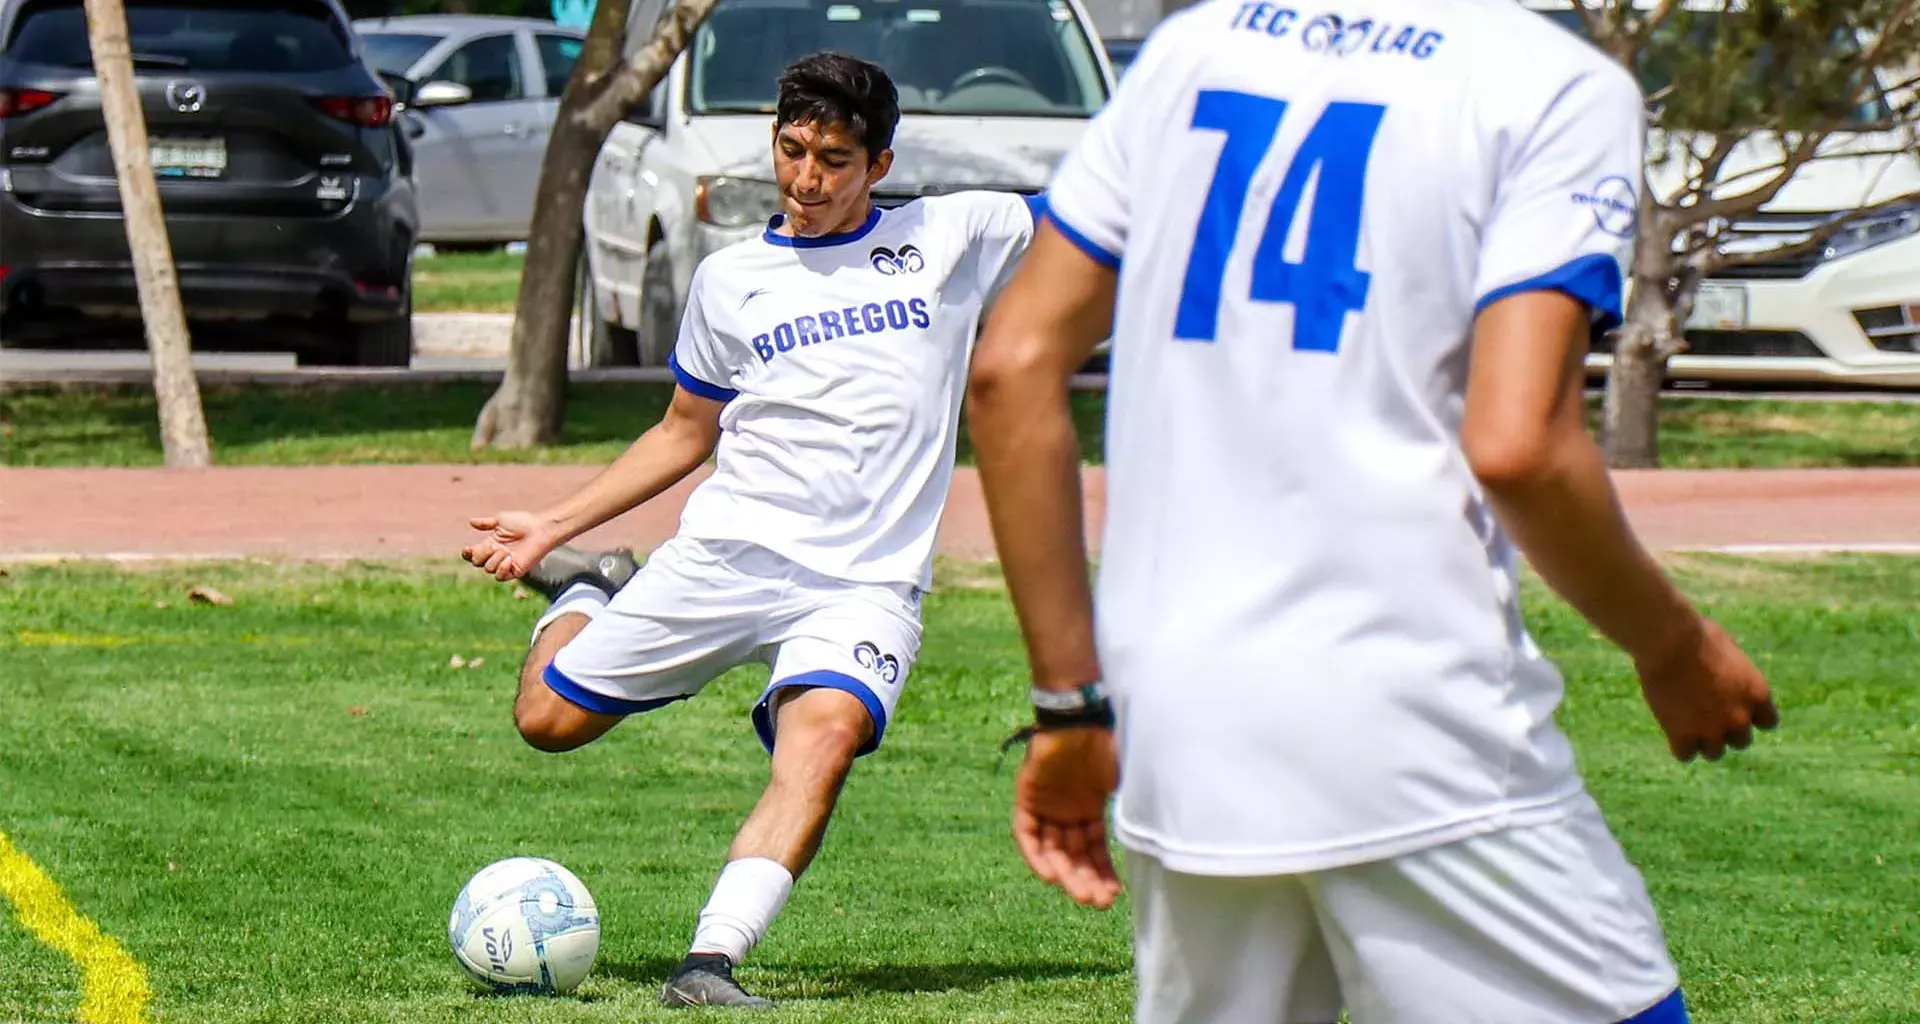 Equipos de futbol soccer del Tec campus Laguna clasifican al nacional